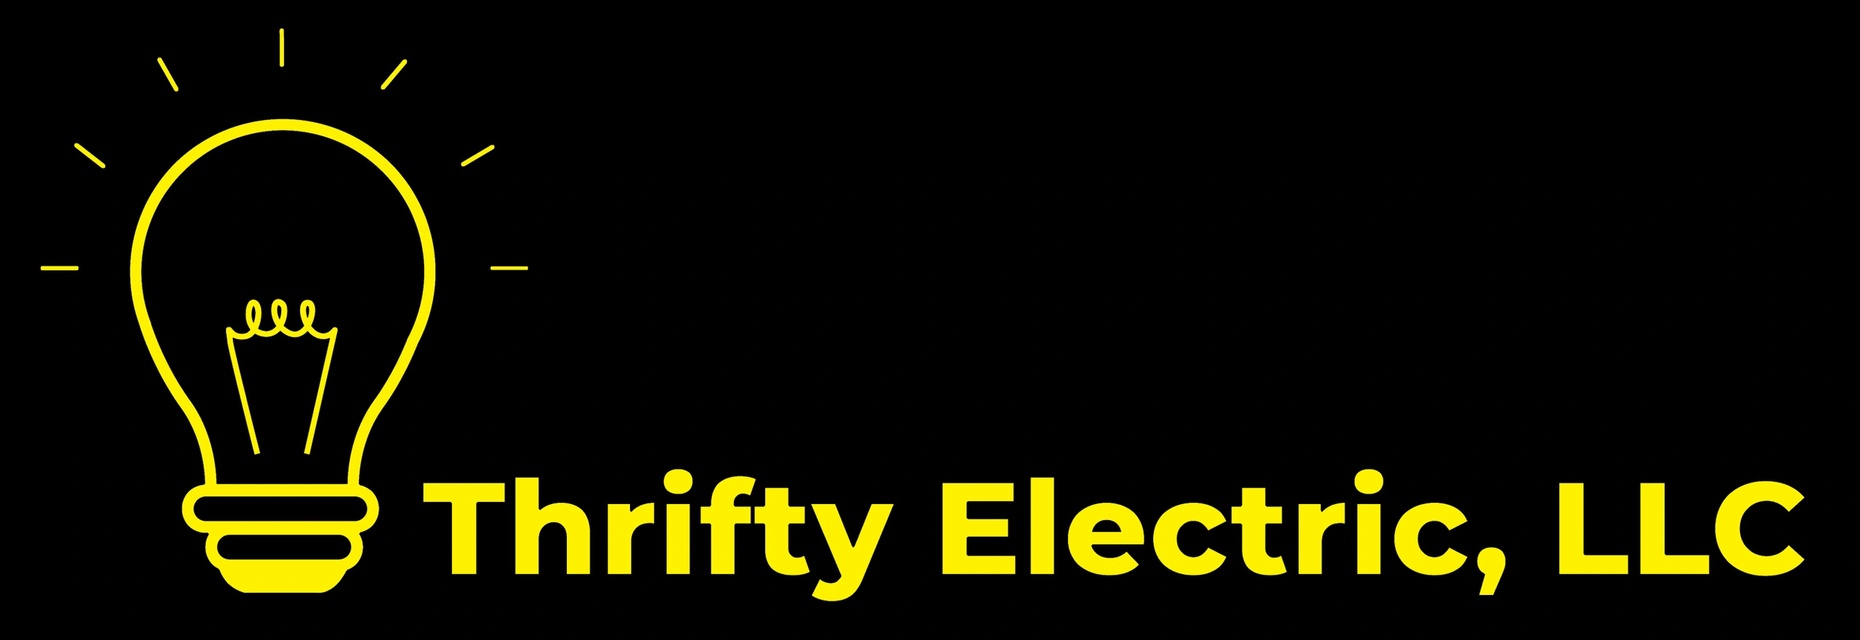  Thrifty Electric, LLC